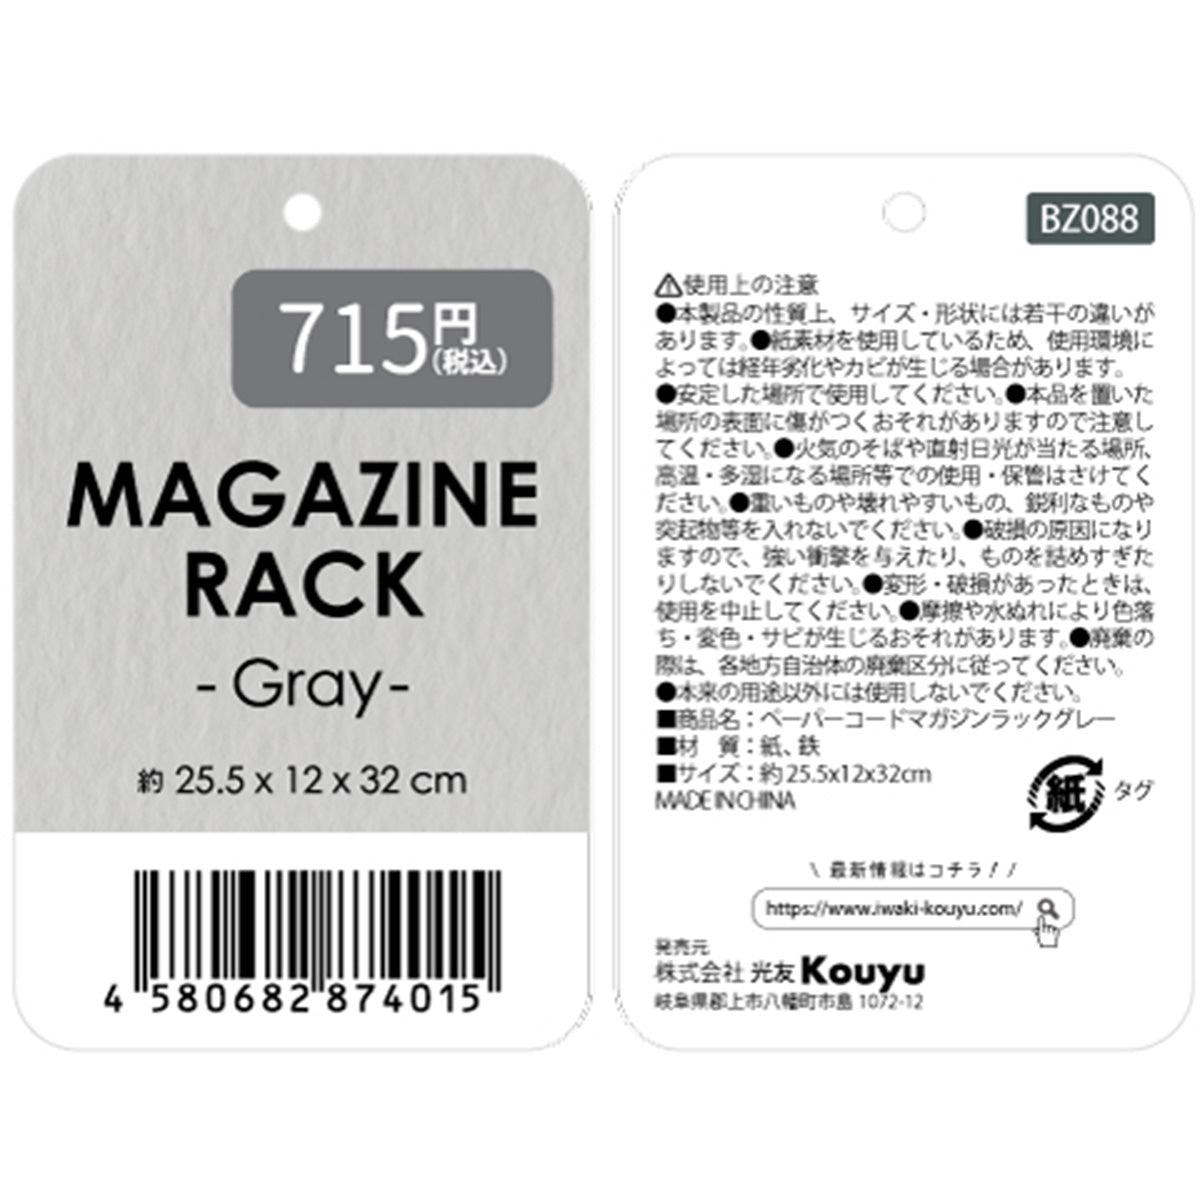 マガジンラック 雑誌ラック ペーパーコードマガジンラックグレー  約25.5x12x32cm 1523/354899